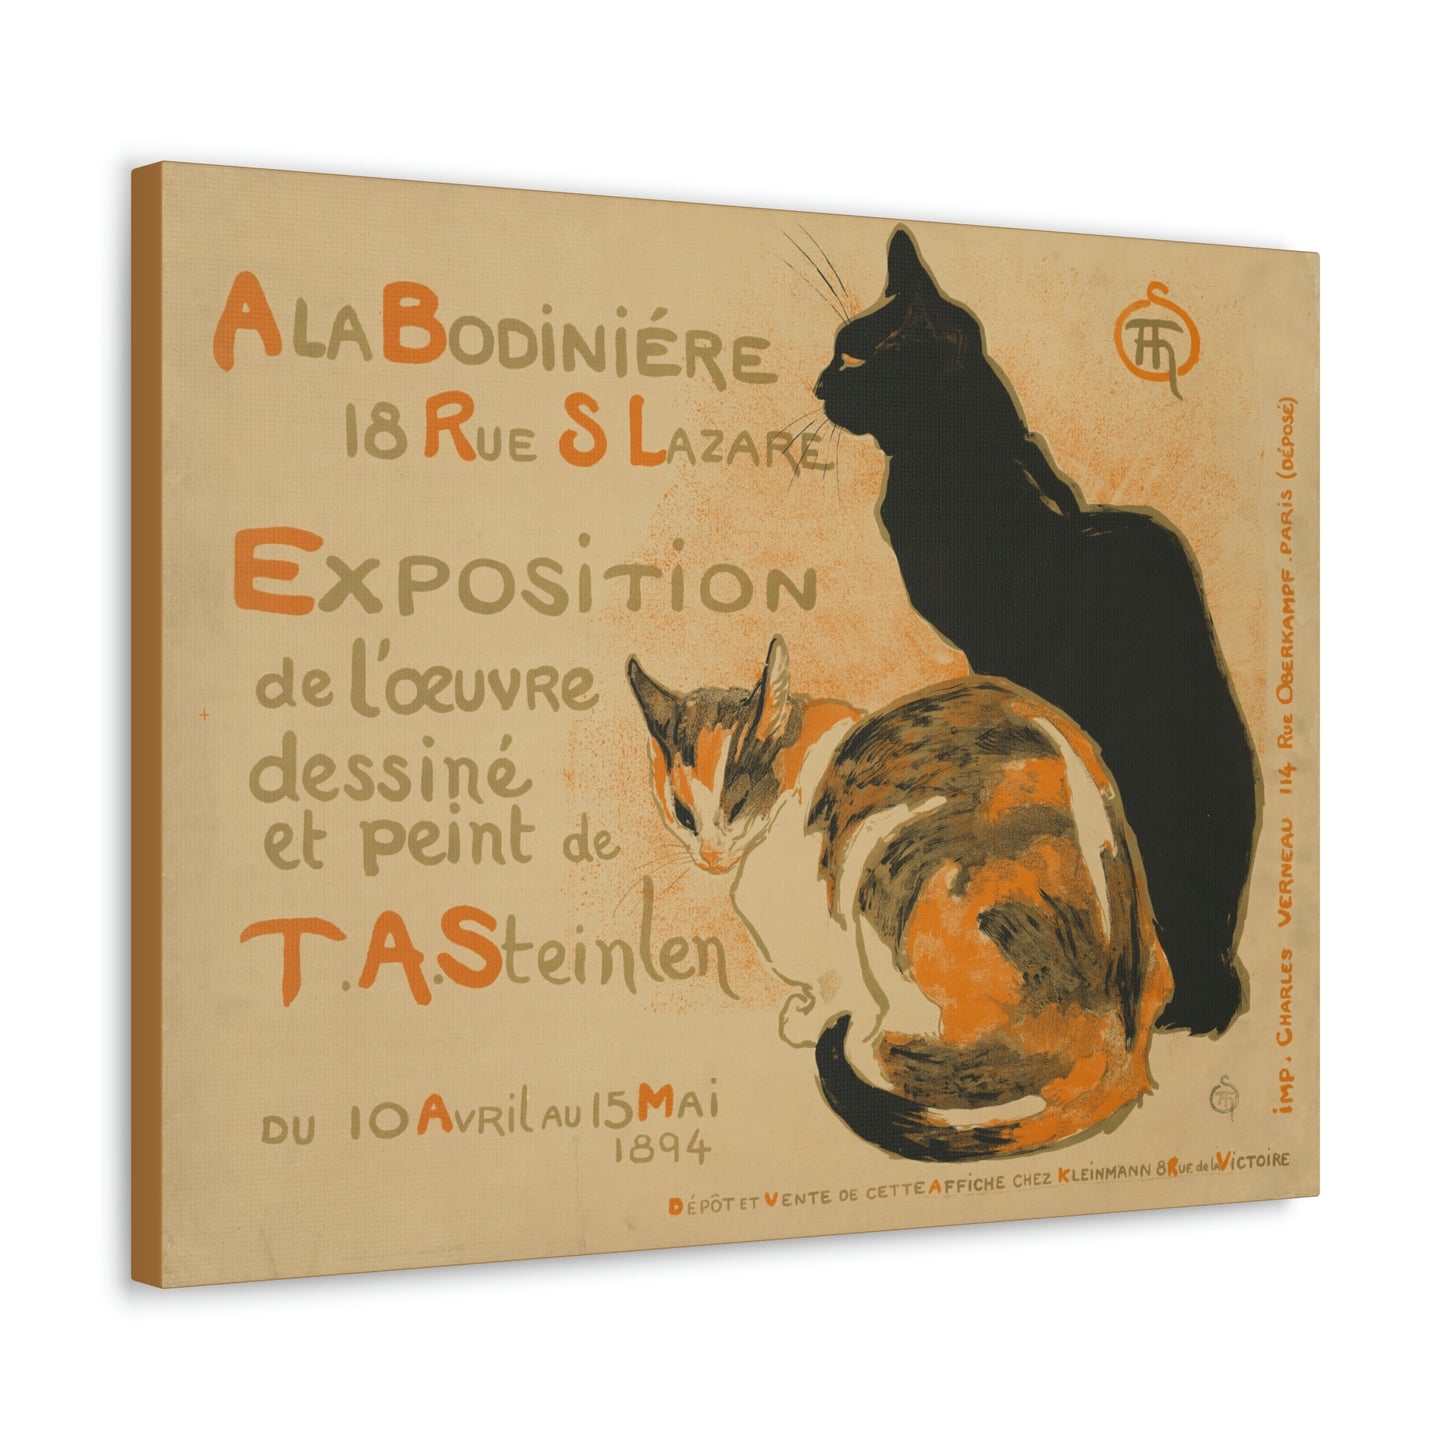 À la Bodiniére by Théophile-Alexandre Steinlen